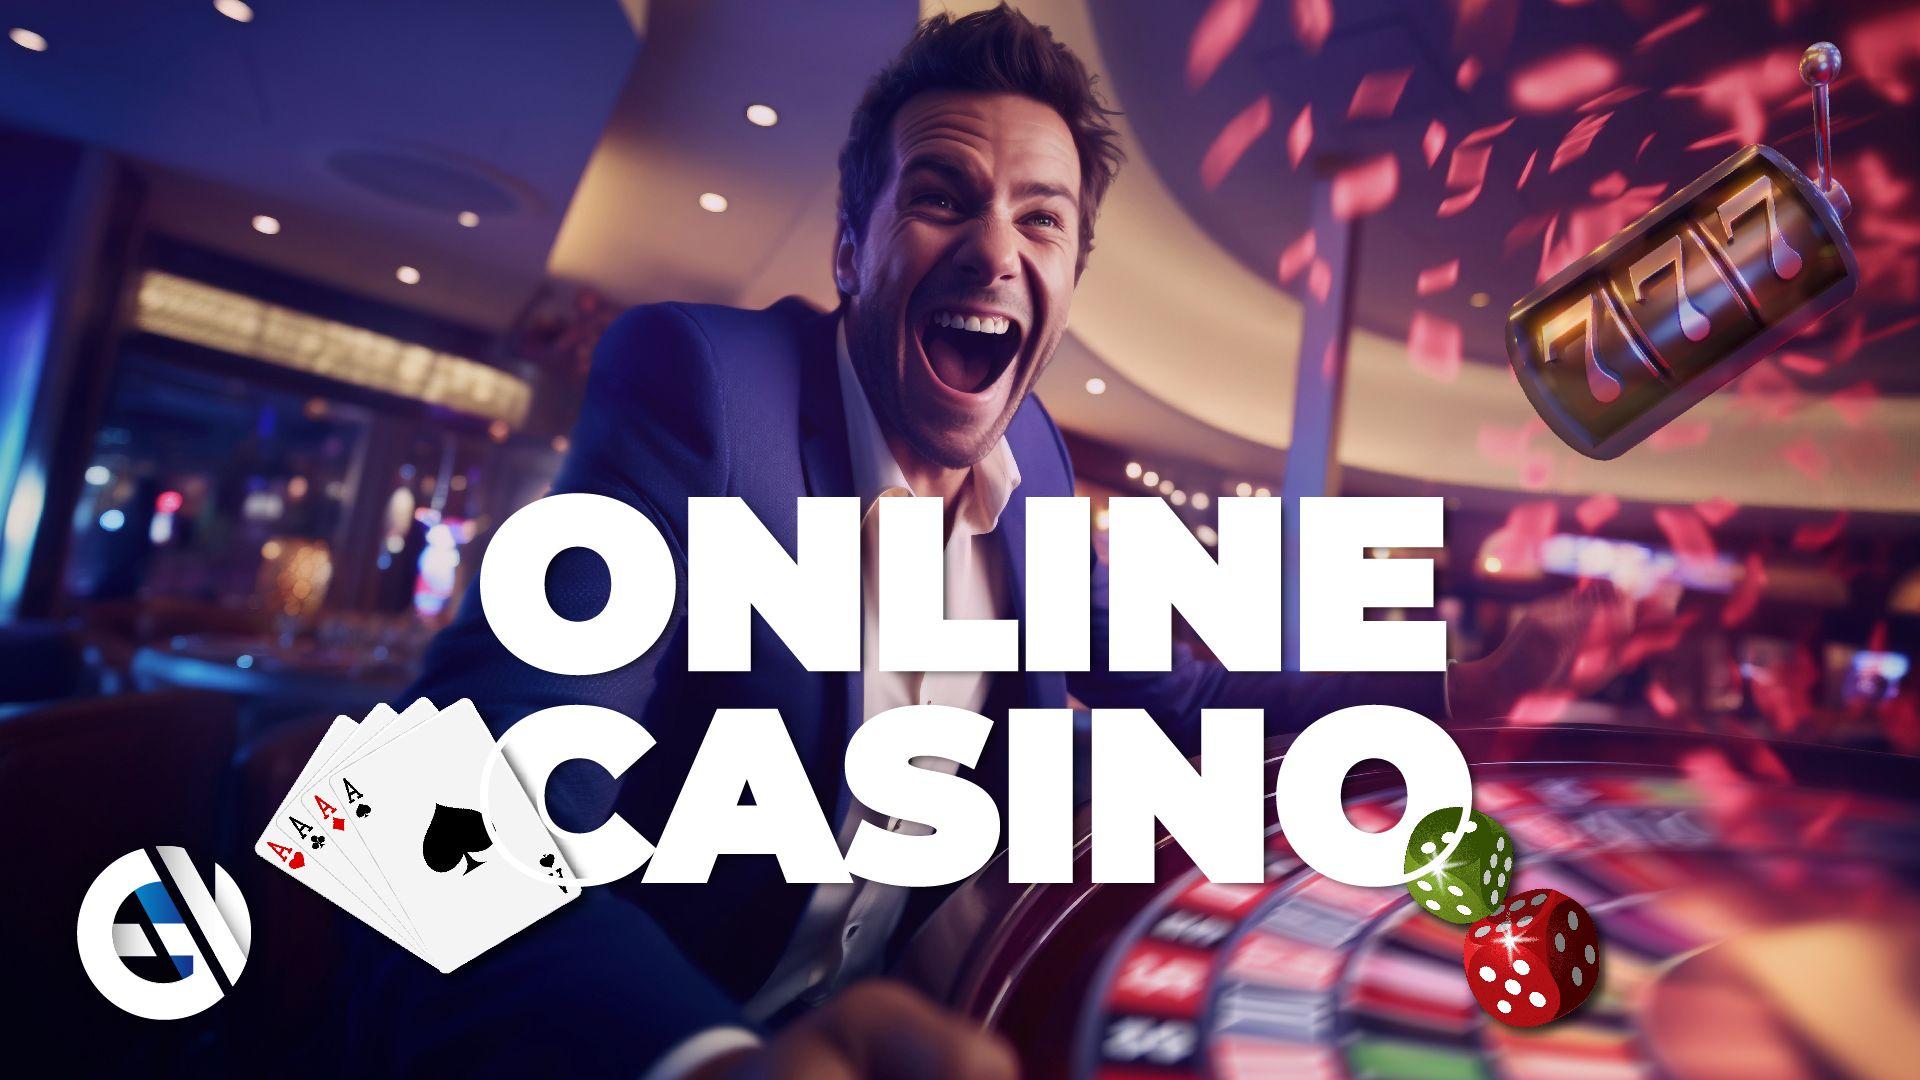 Cómo encontrar y elegir entre los últimos casinos en línea - Lo más importante que debe comprobar antes de jugar